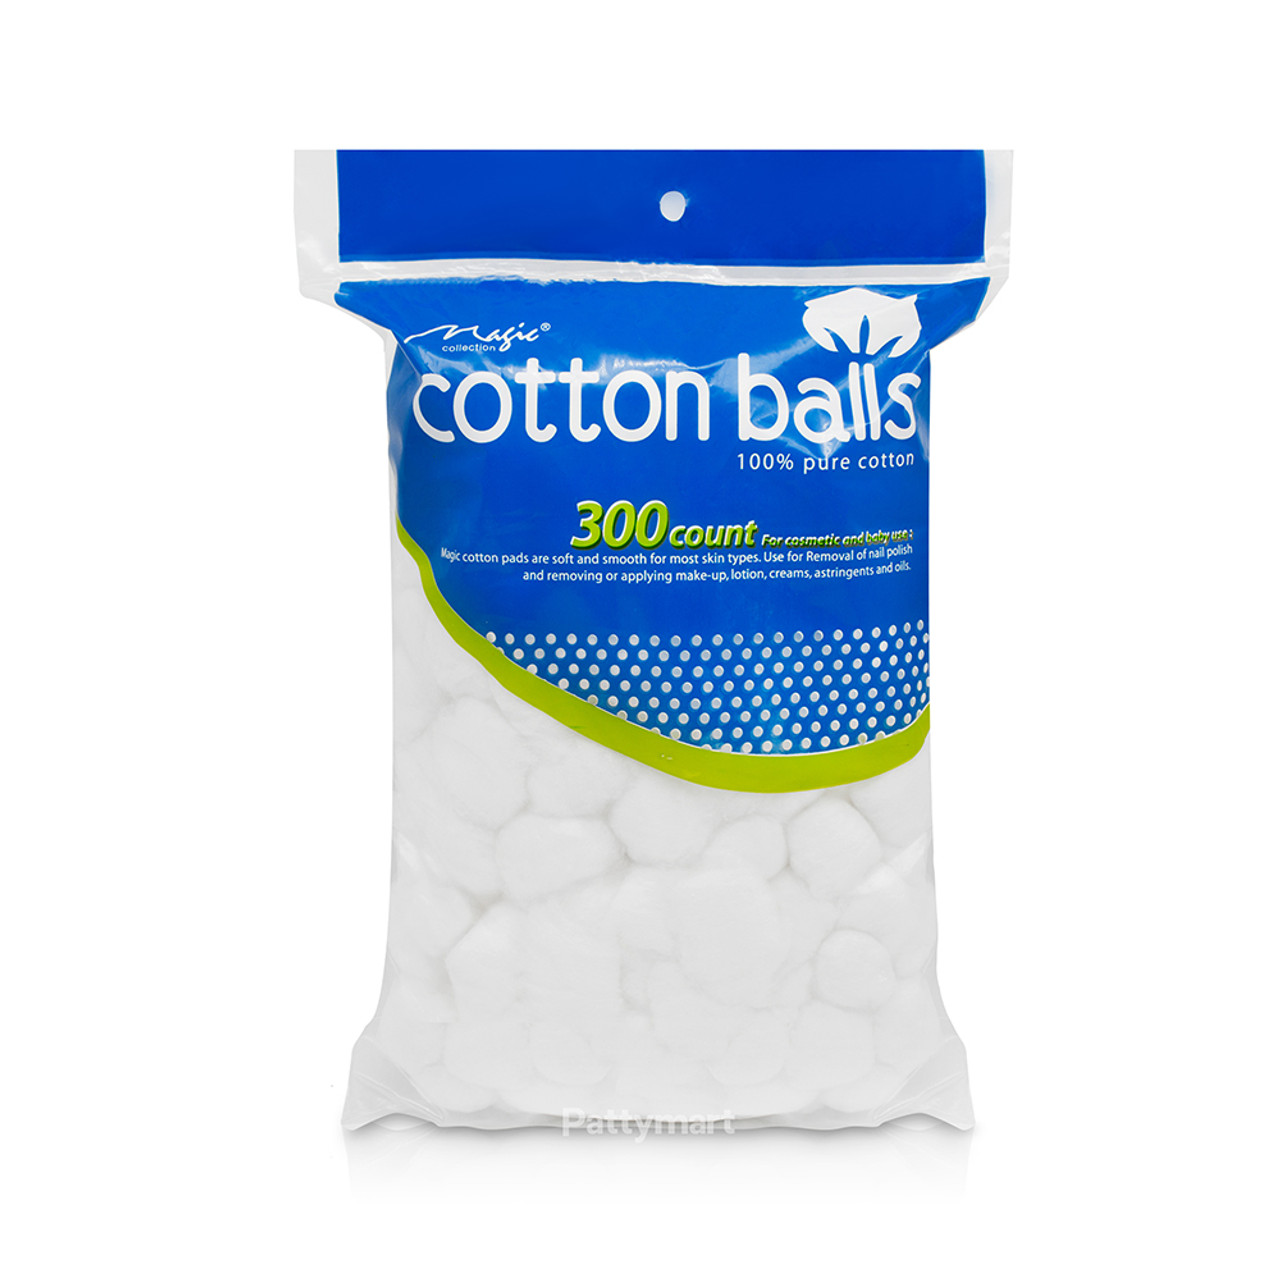 Cotton balls/ Bolas de Algodón x 300